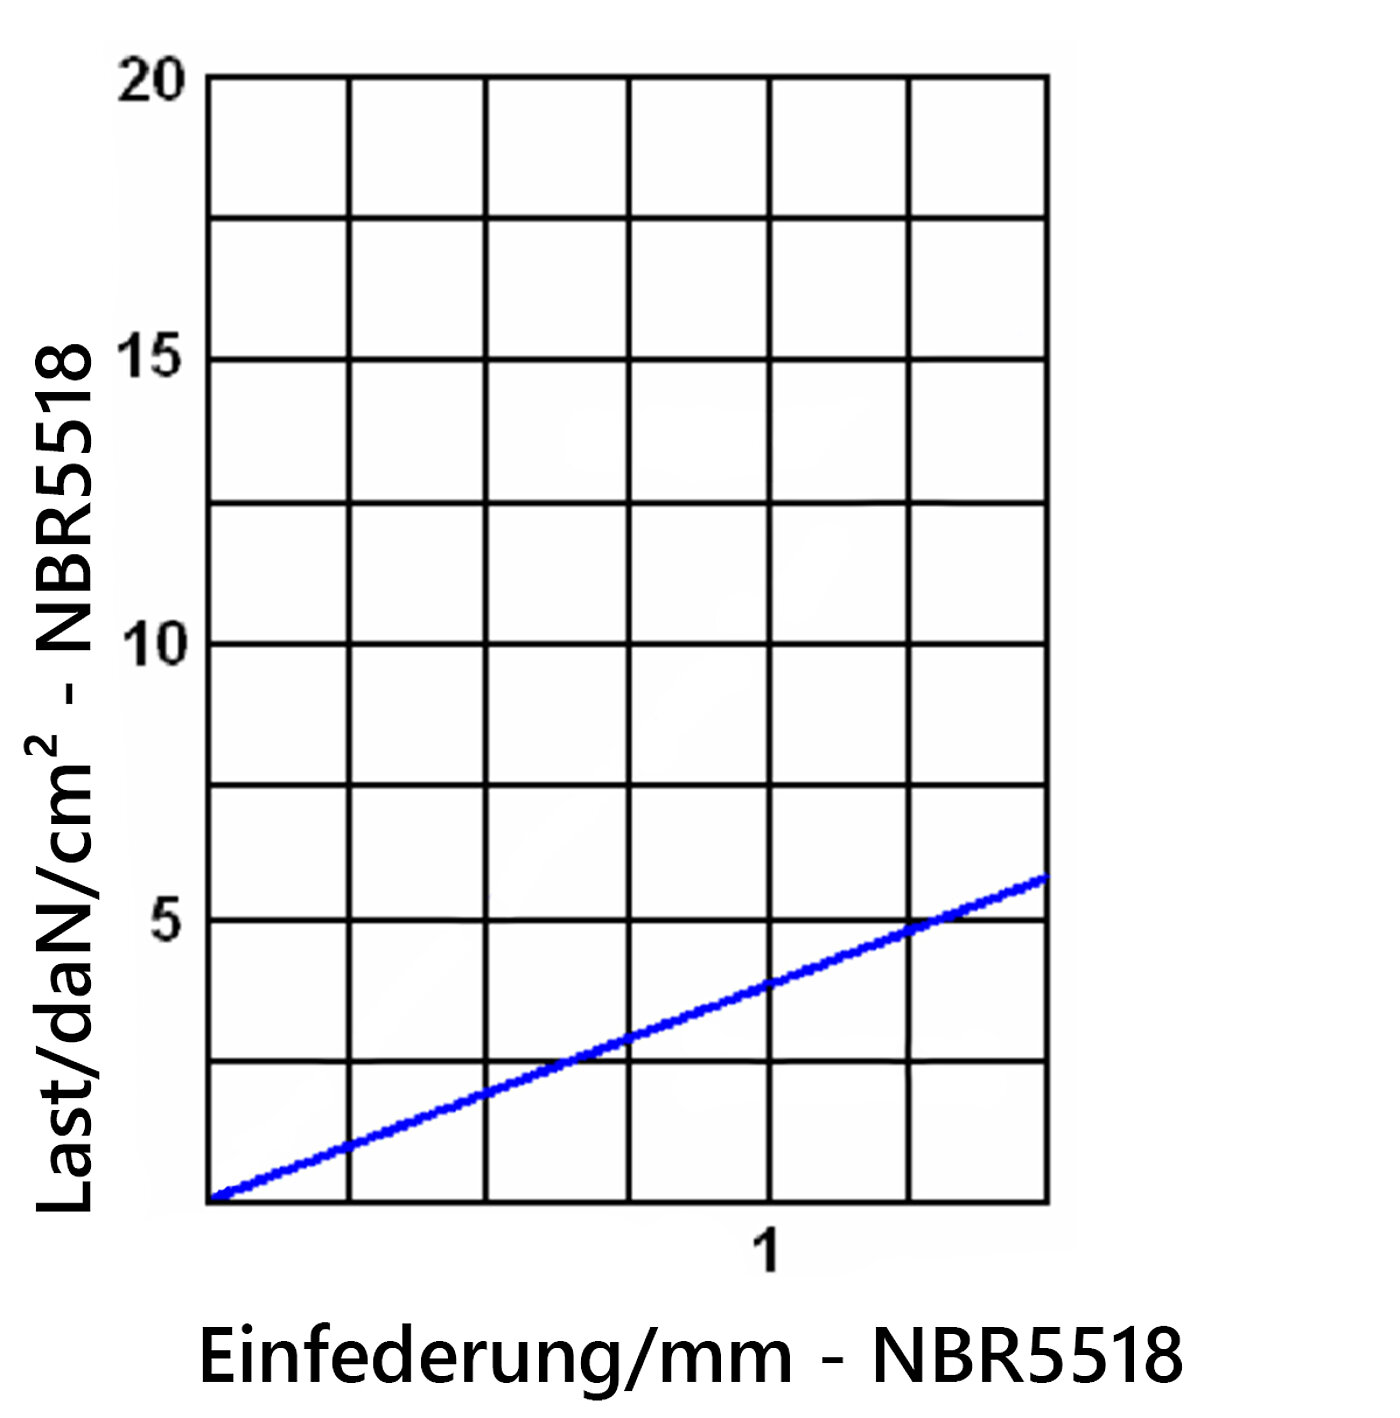 Diagramm der Einfederung der Elastomerplatte NBR5518 unter Last